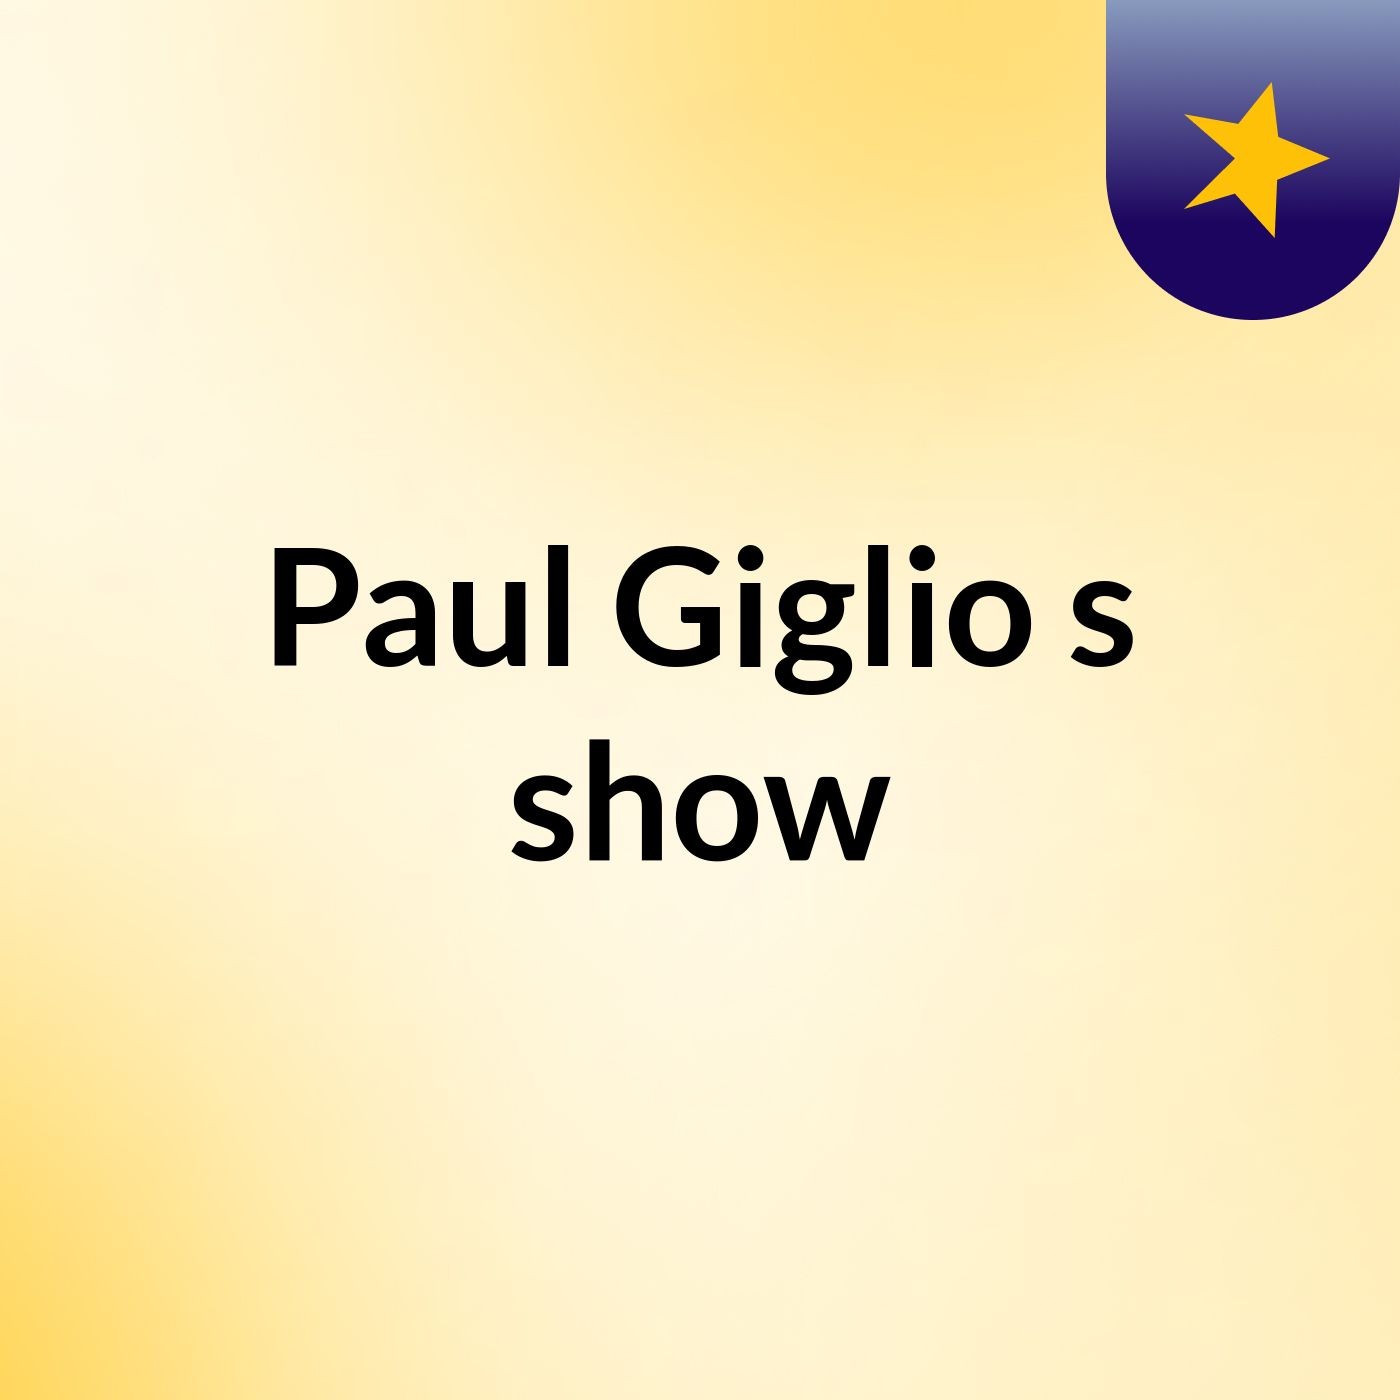 Paul Giglio's show